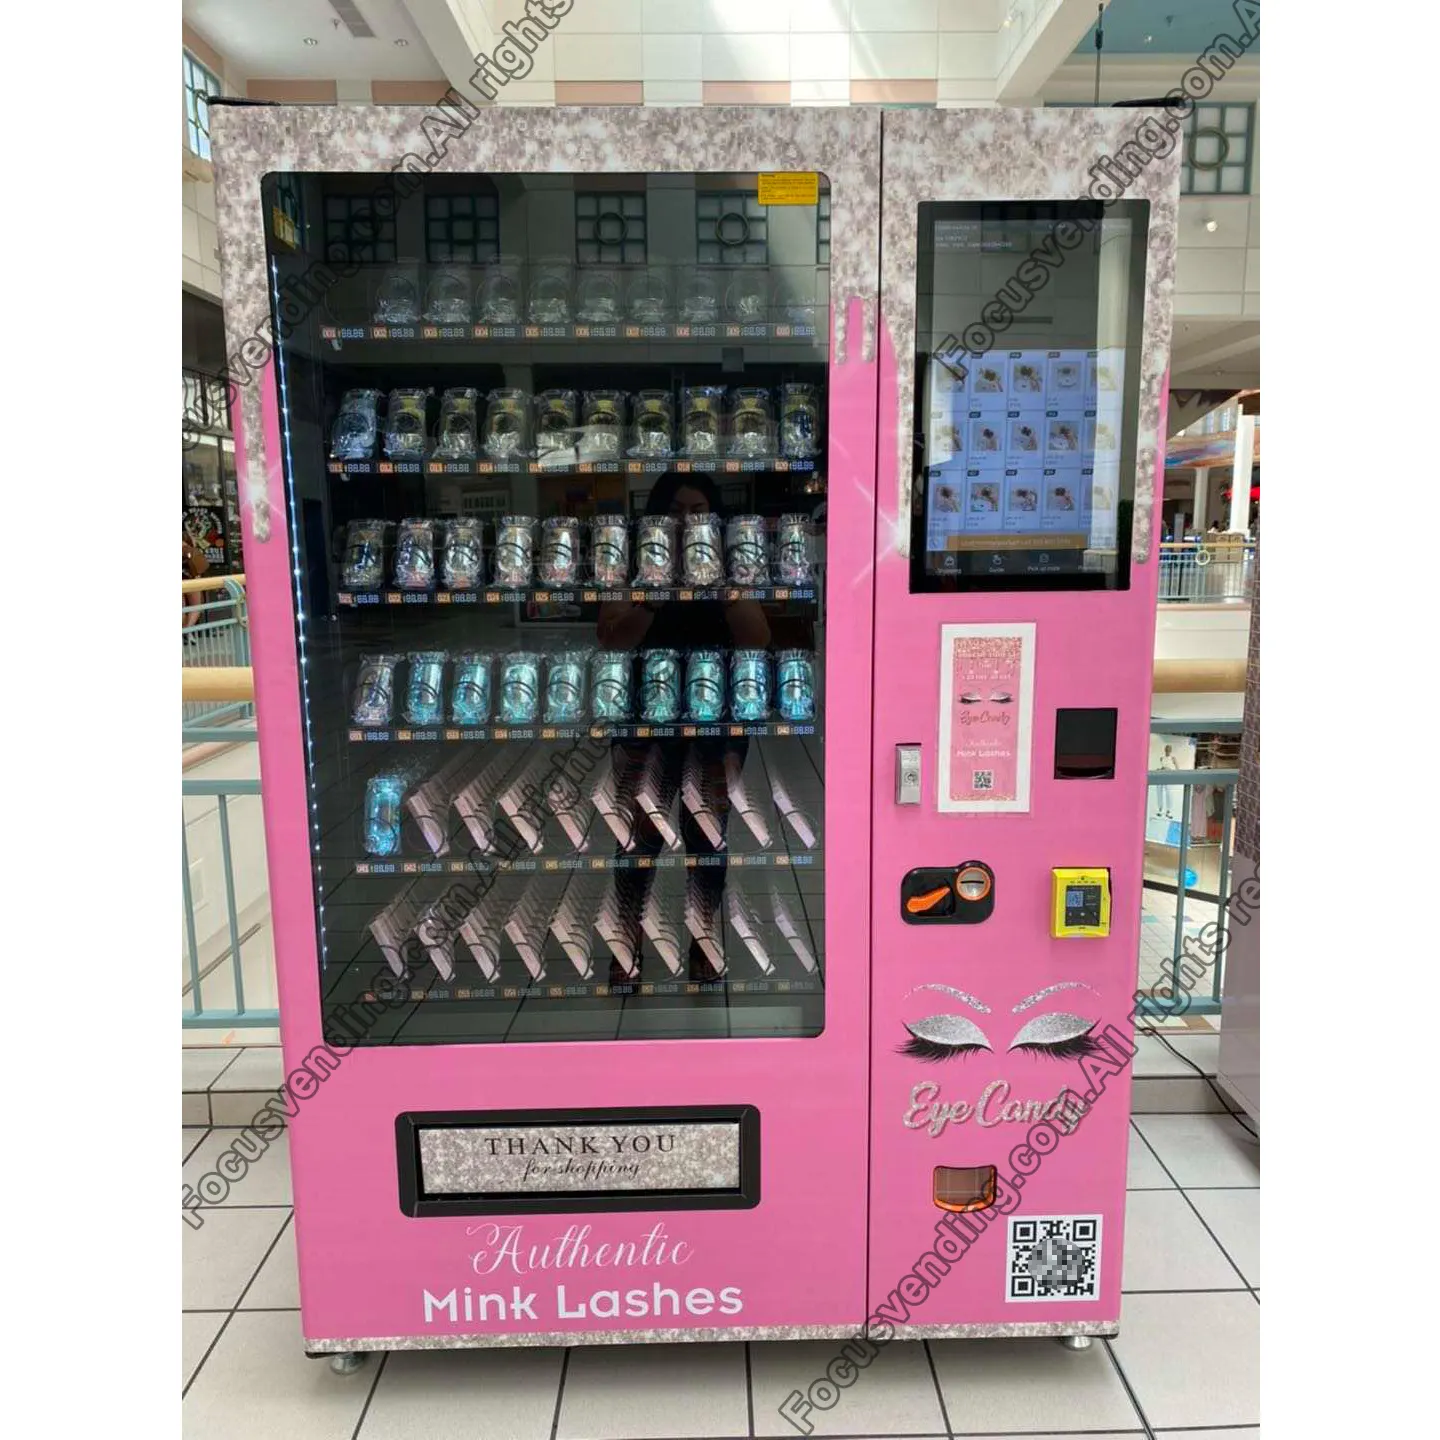 Machine de distribution de cosmétiques intelligente, ensemble de cosmétiques, pour parfum et rouge à lèvres, écran tactile, 21.5 pouces, livraison gratuite